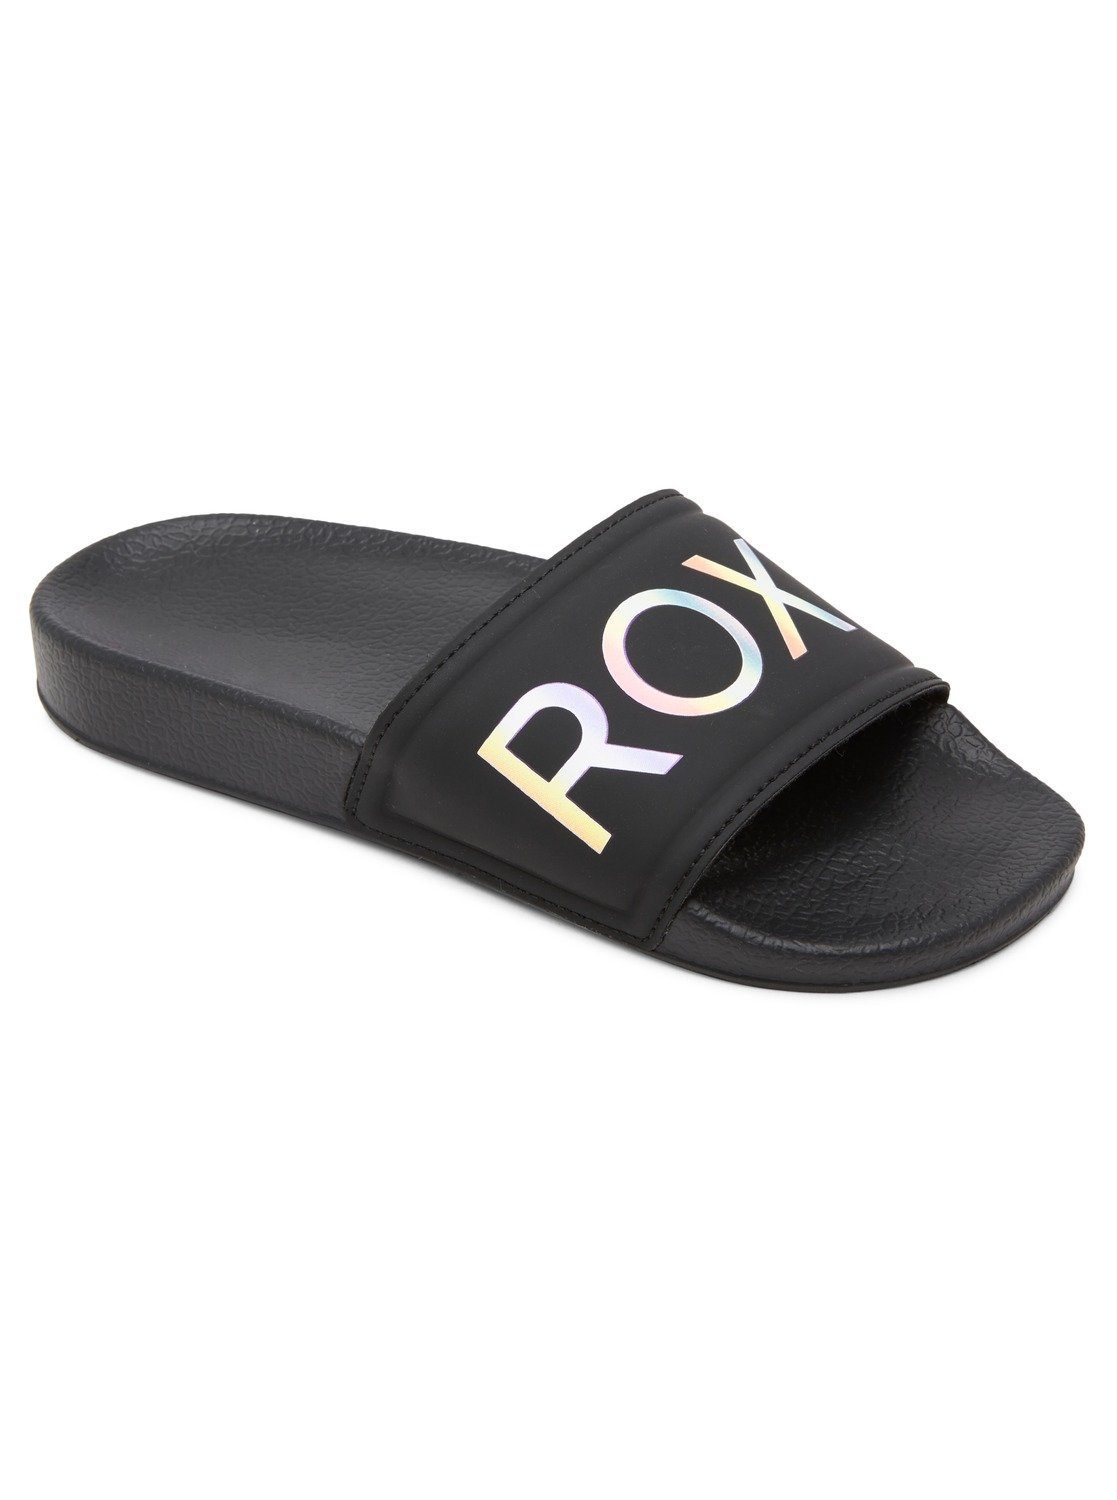 Roxy Slippy Sandale schwarz